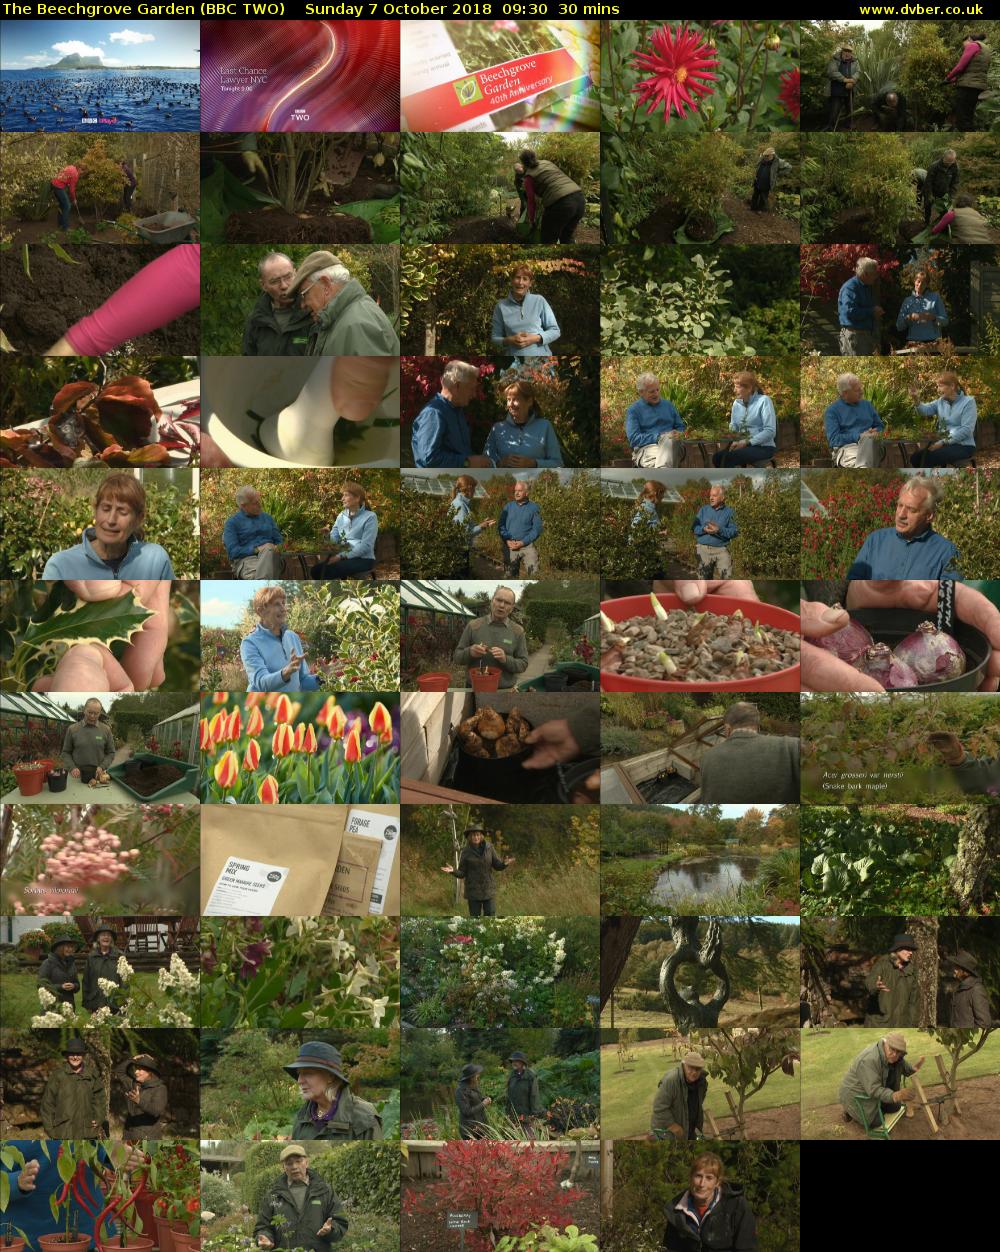 The Beechgrove Garden (BBC TWO) Sunday 7 October 2018 09:30 - 10:00